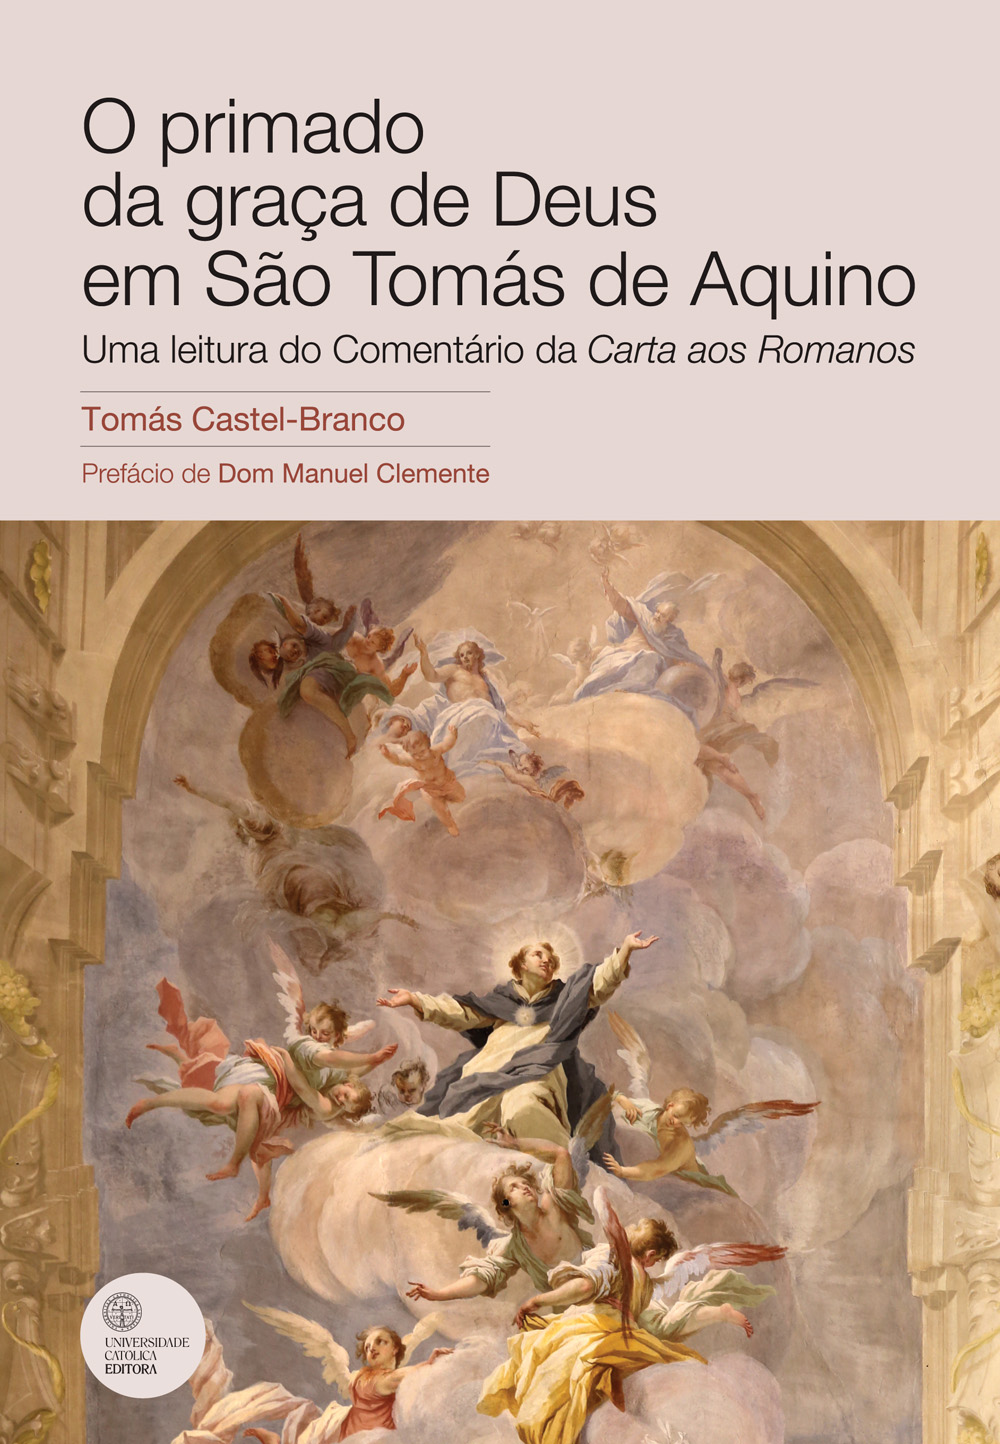 O PRIMADO DA GRAÇA DE DEUS EM SÃO TOMÁS DE AQUINO - Universidade Católica Editora